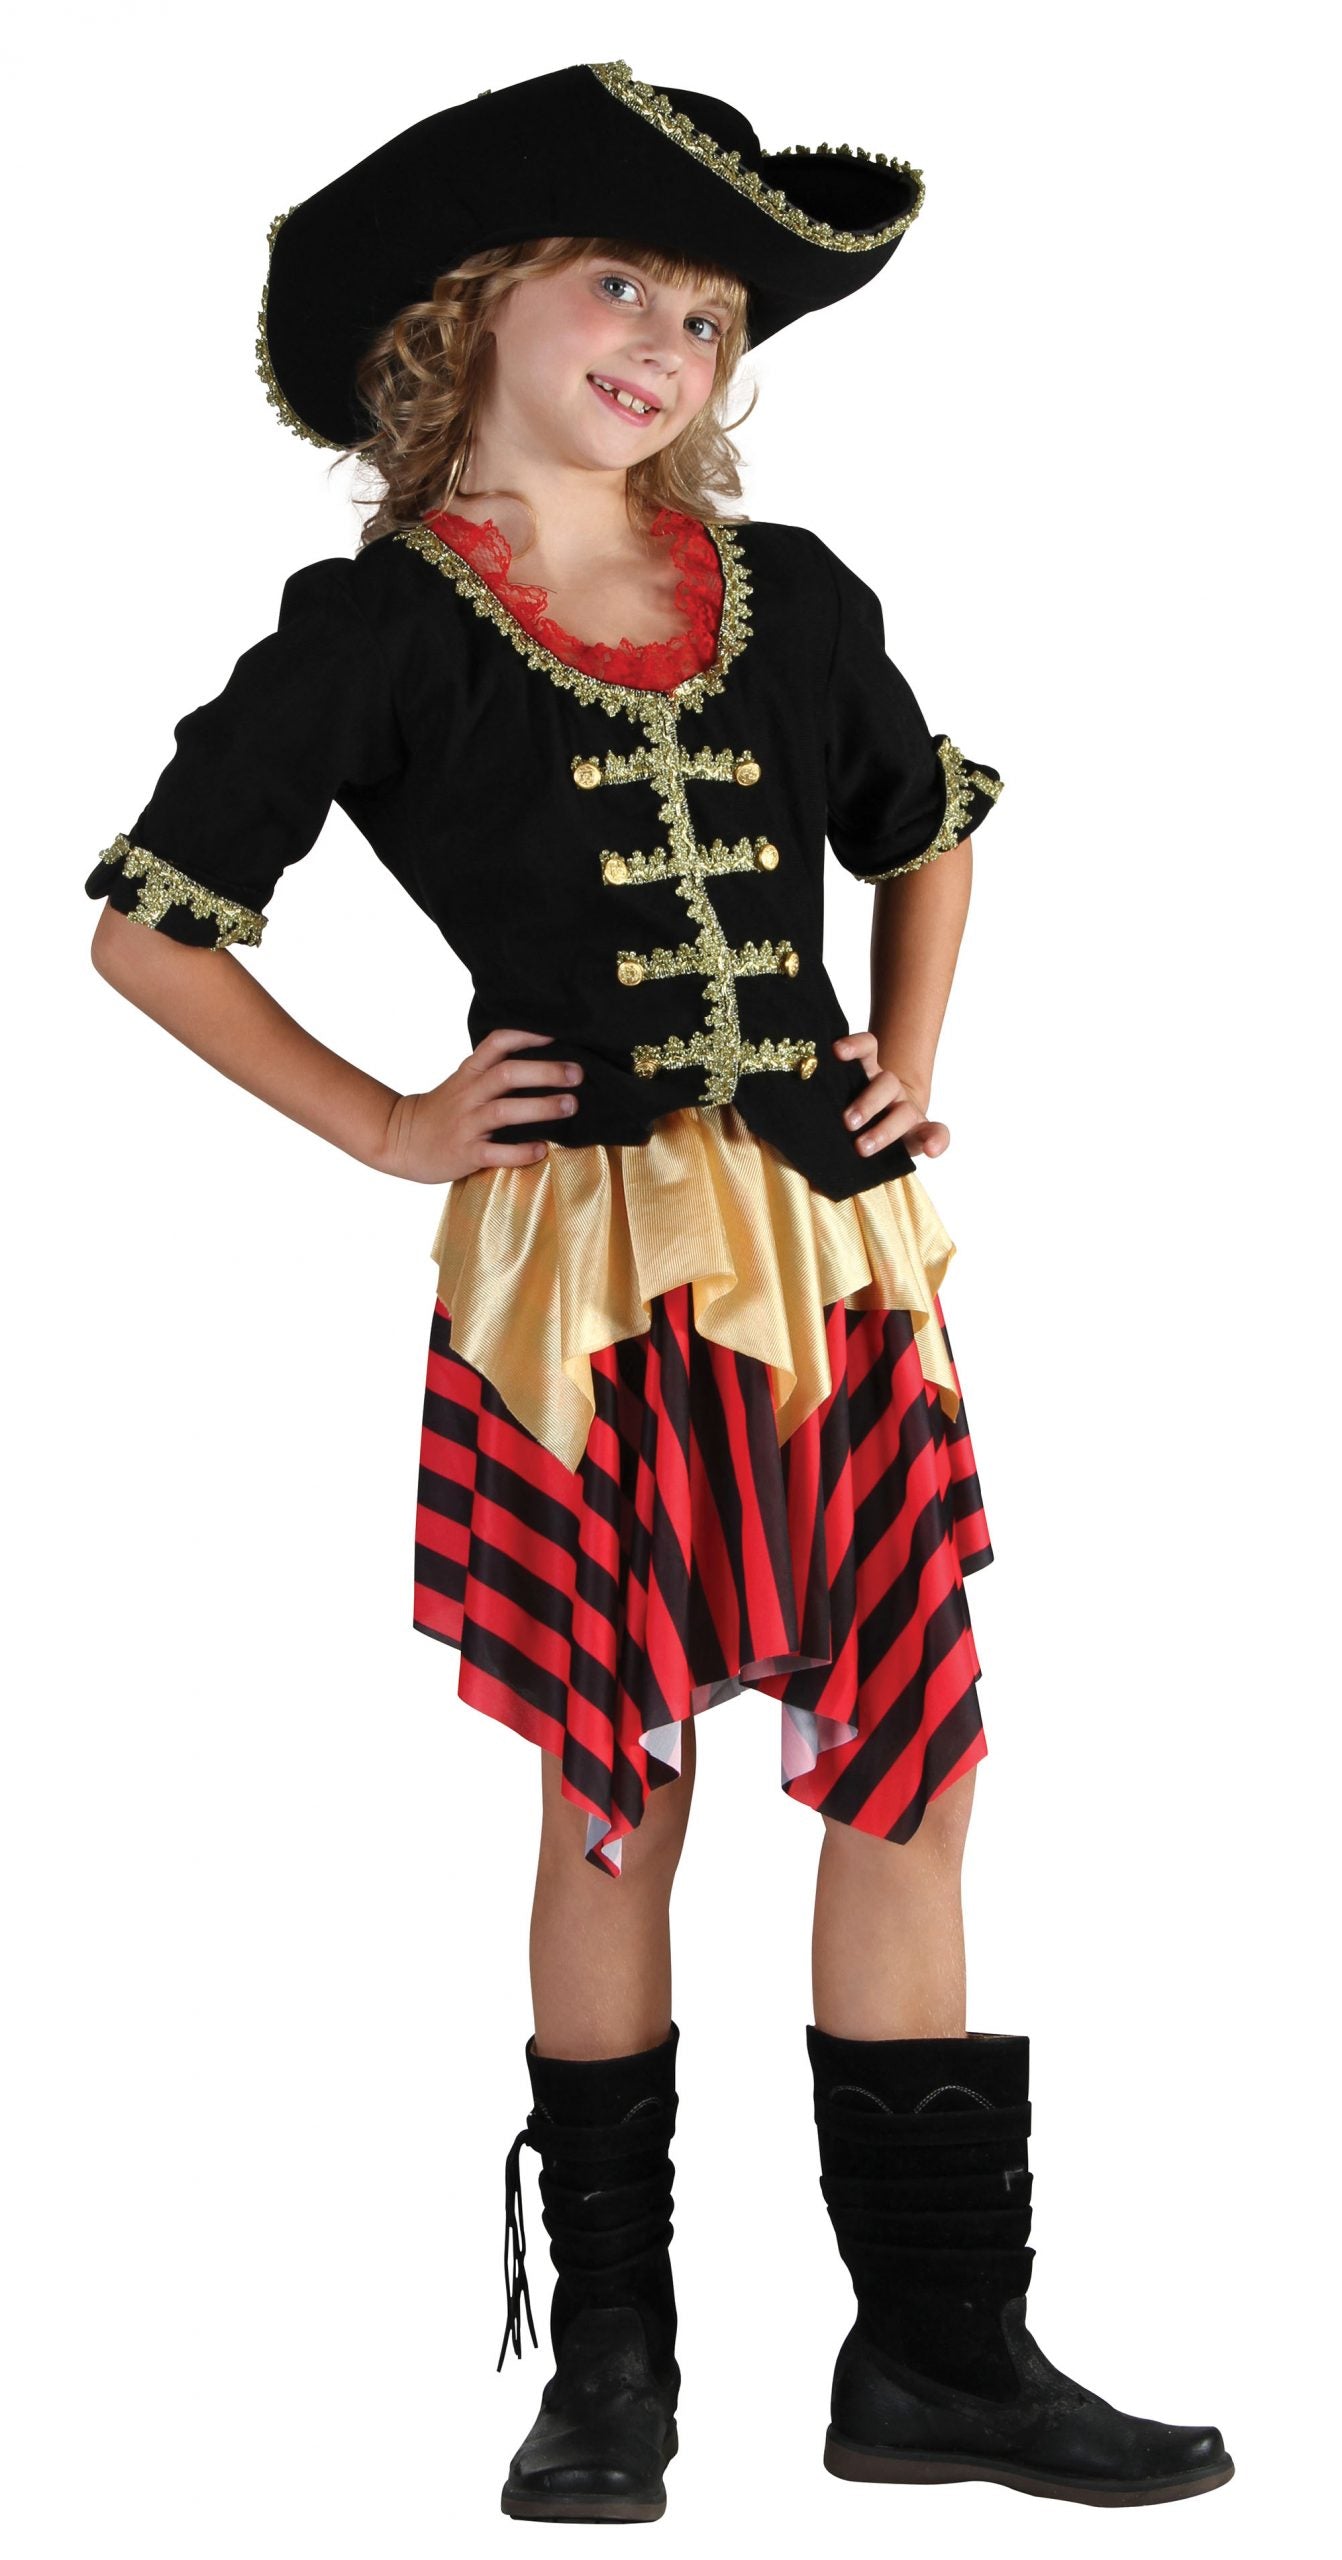 Buccaneer Pirate Sweetie costume Girl